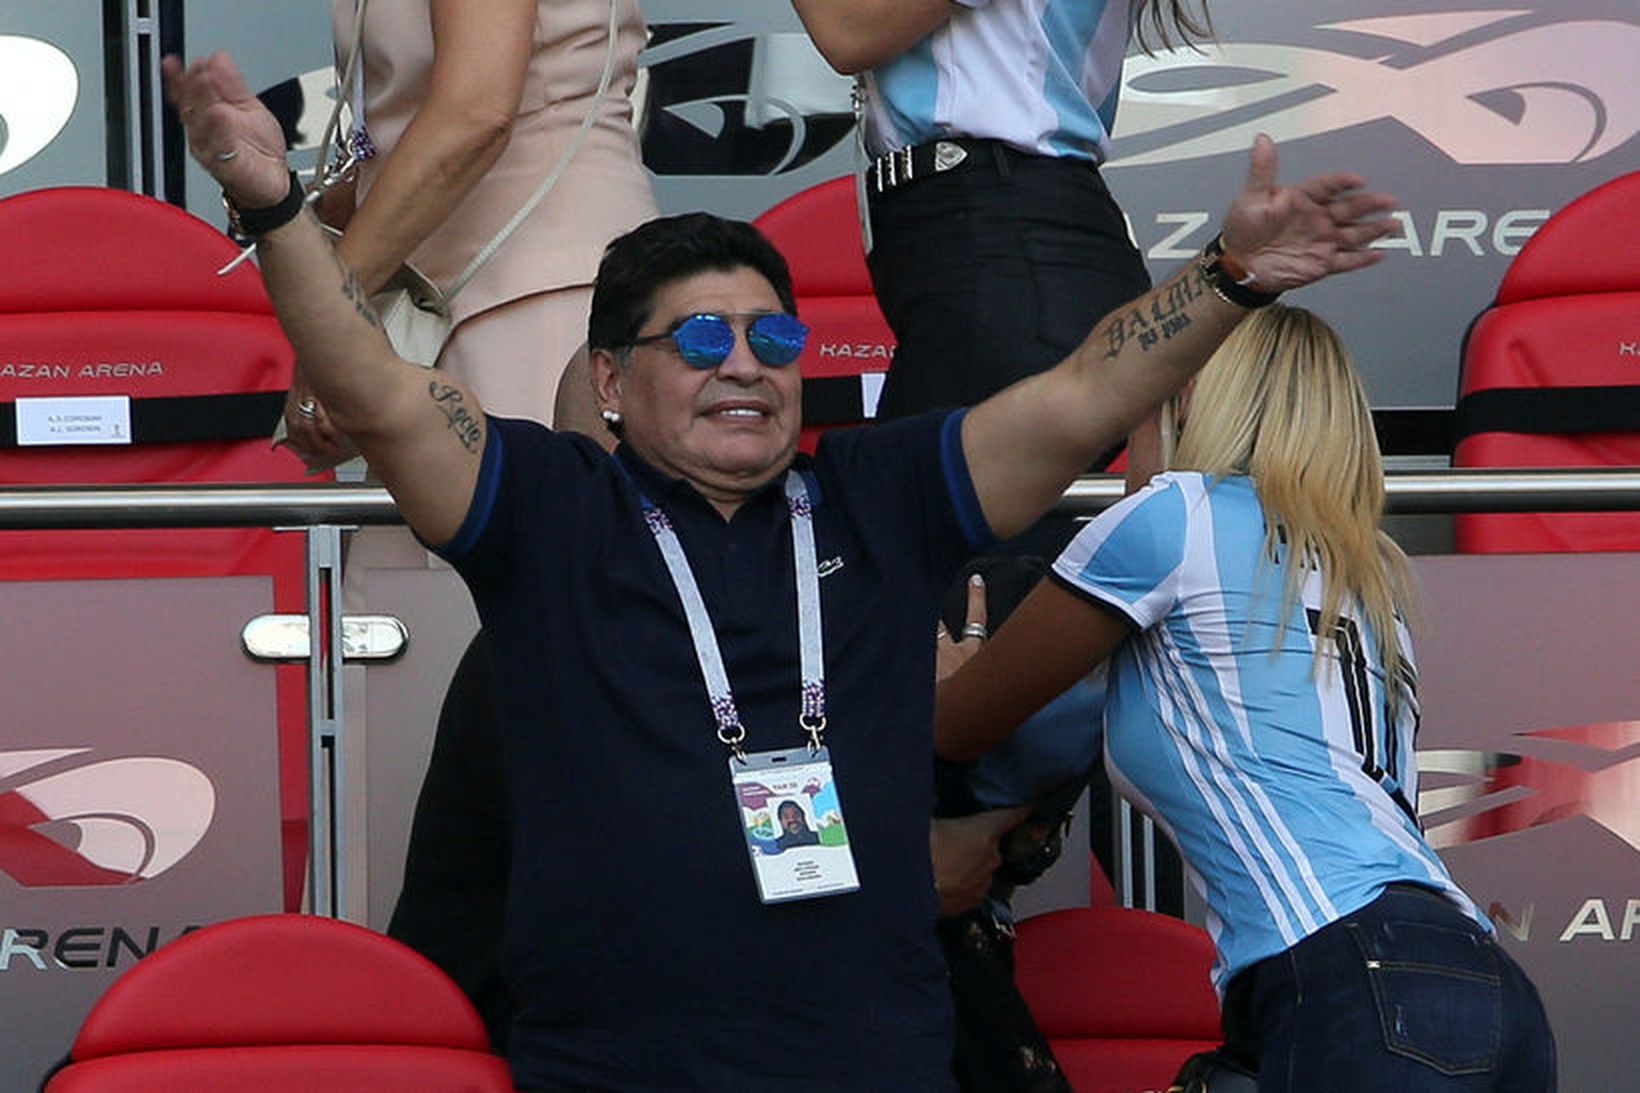 Maradona ásamt unnustu sinni á HM í Rússlandi.